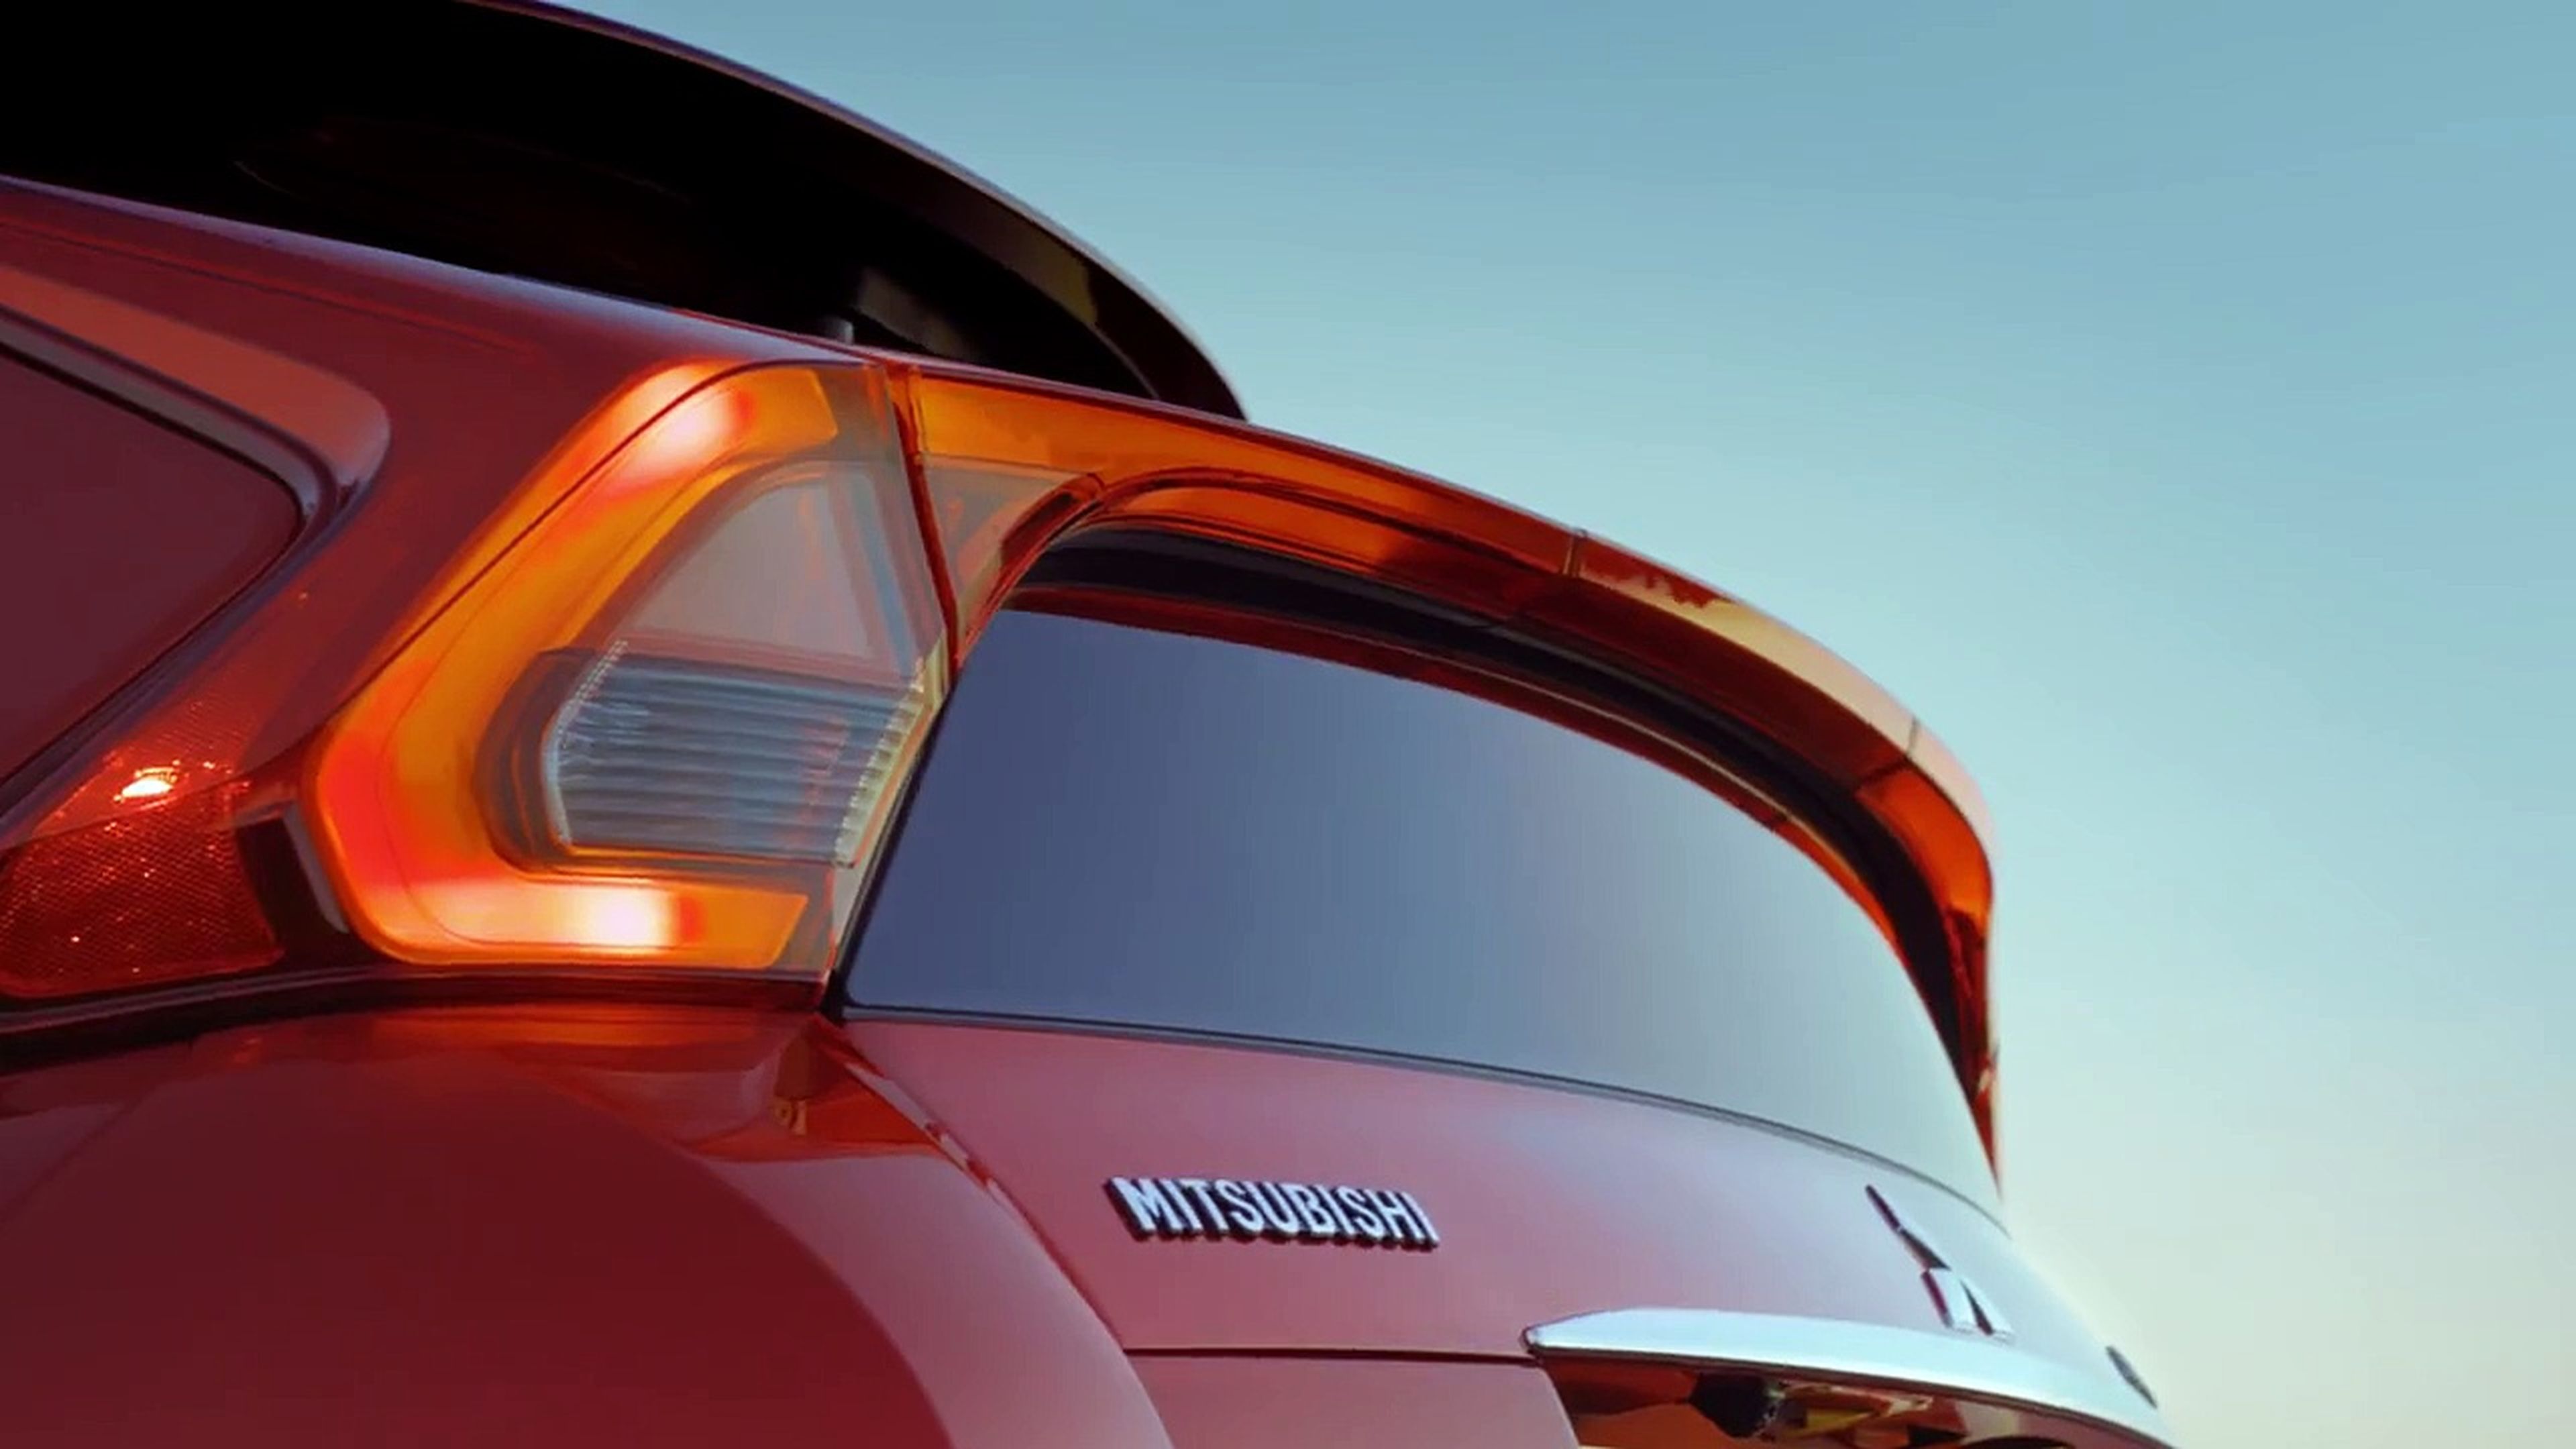 VÍDEO: analiza el Mitsubishi Eclipse Cross ¡en detalle!